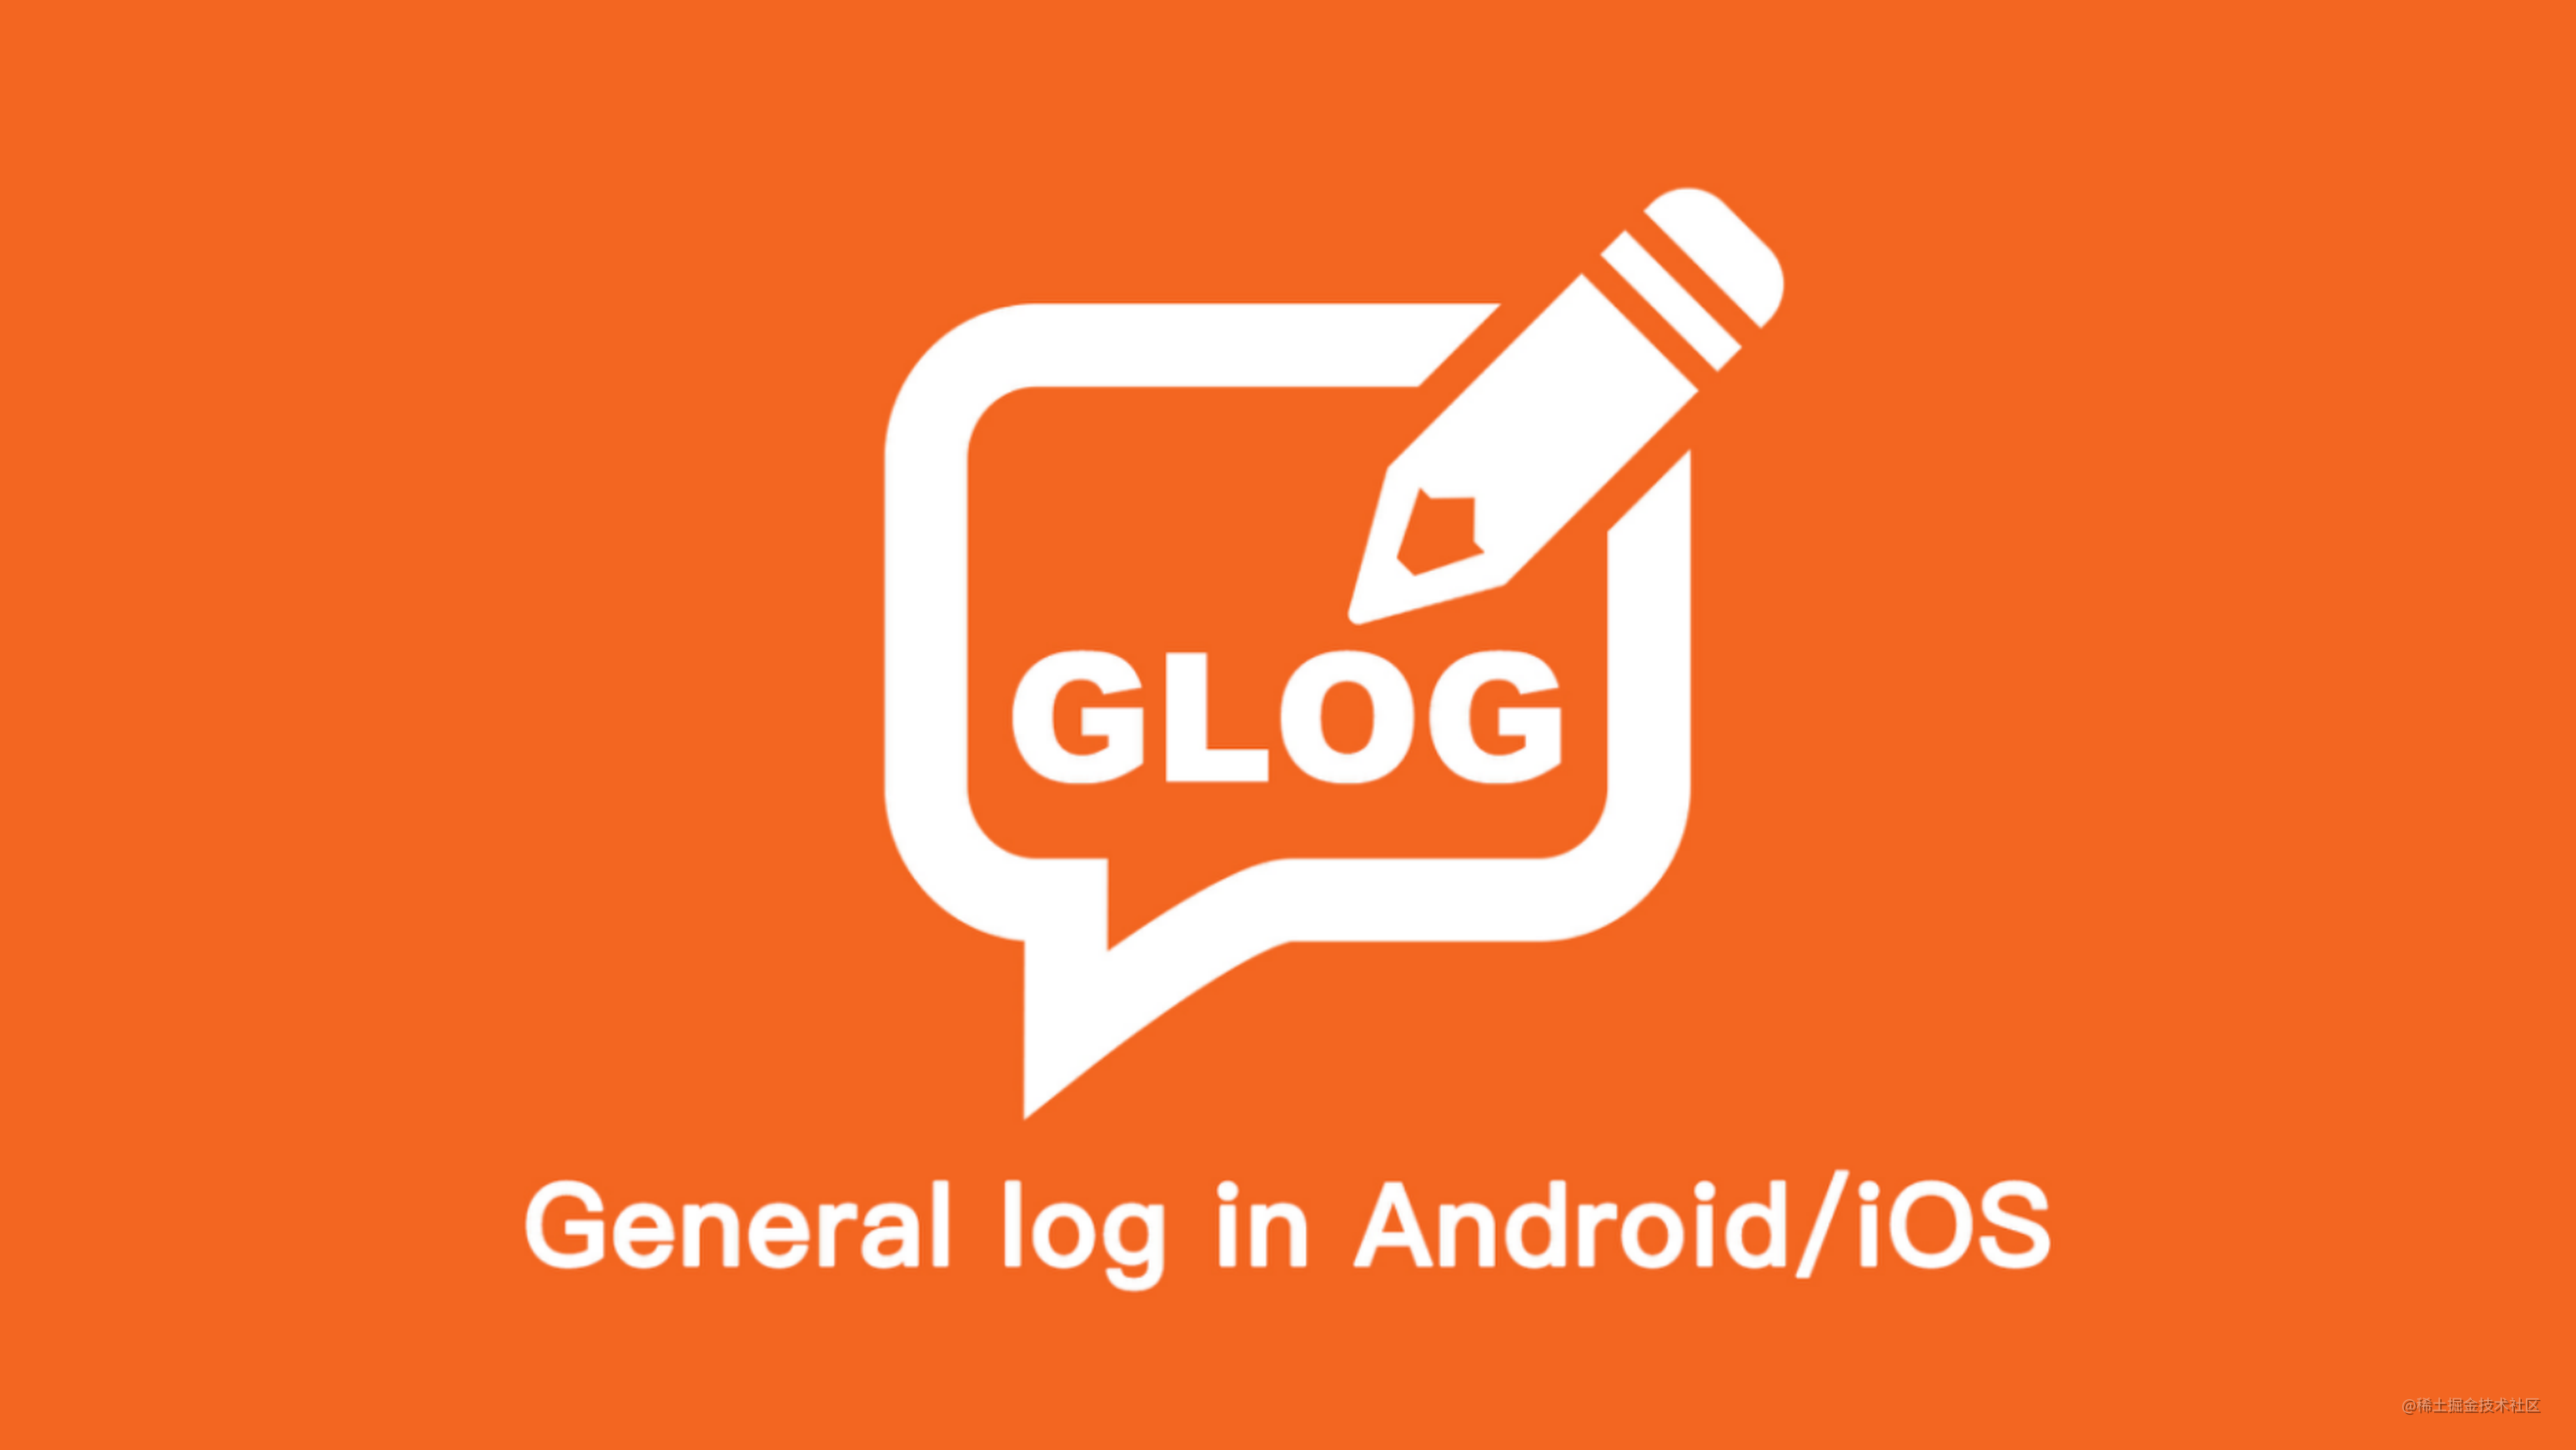 货拉拉客户端通用日志组件 - Glog